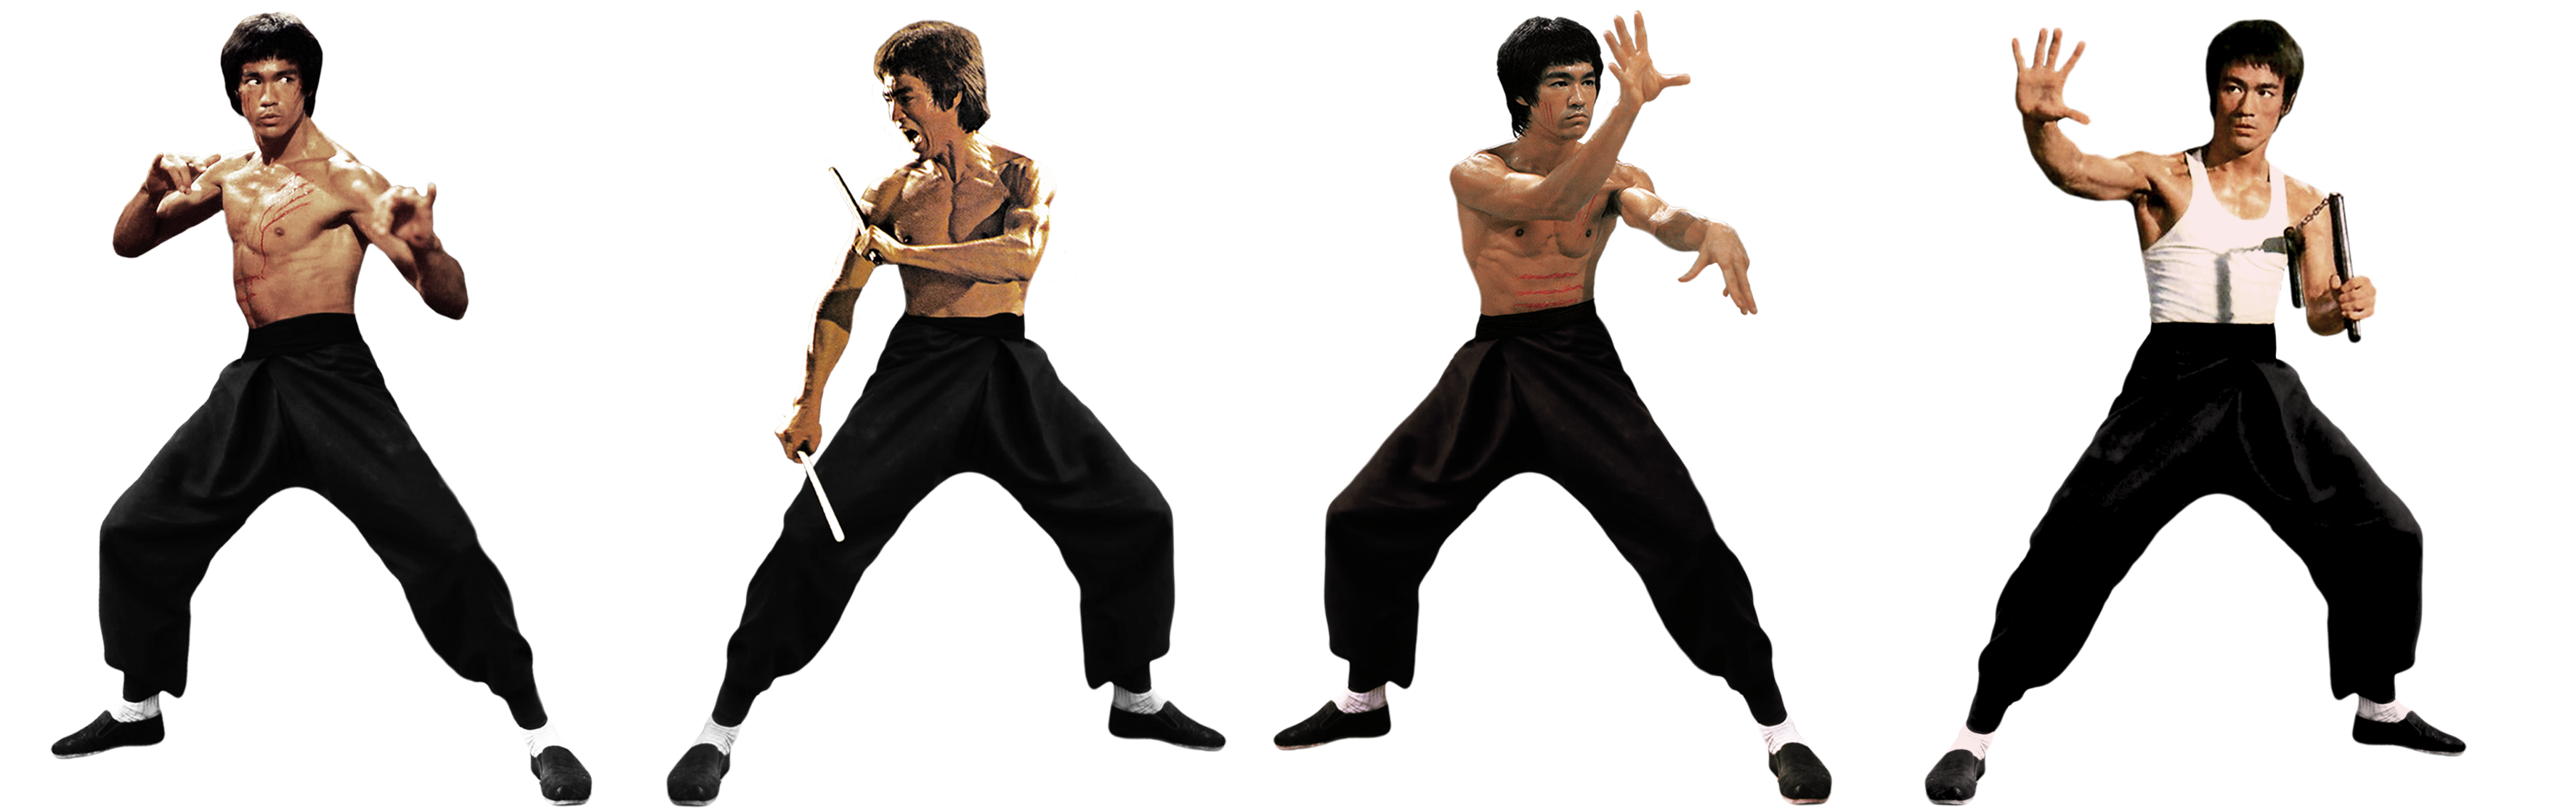 Bruce Lee Transparent Background PNG Image